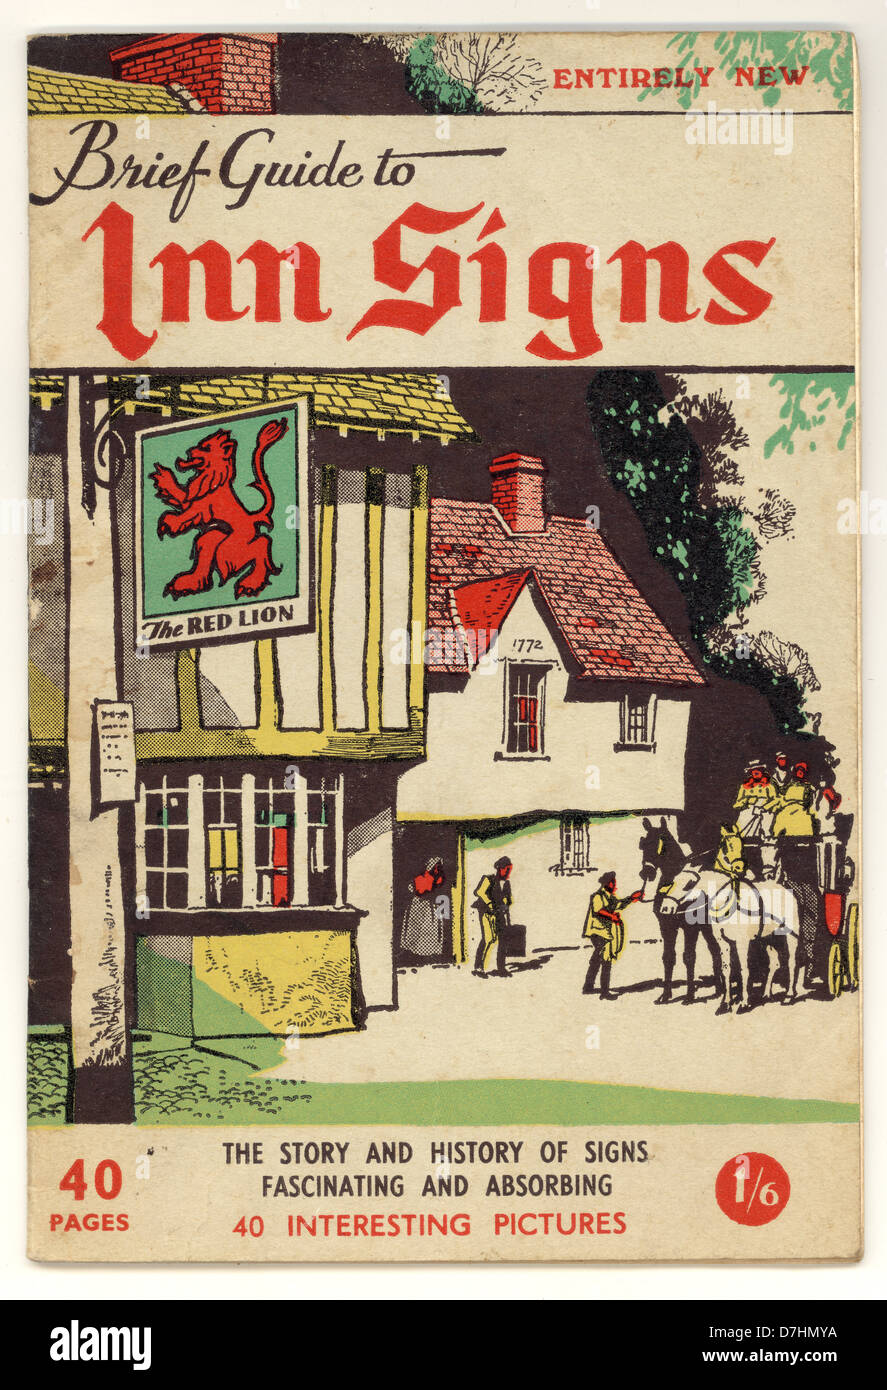 Brochure originale des années 60 - Guide de l'auberge - vers 1965 - publié par Raleigh Press, Exmouth, Devon, Royaume-Uni Banque D'Images